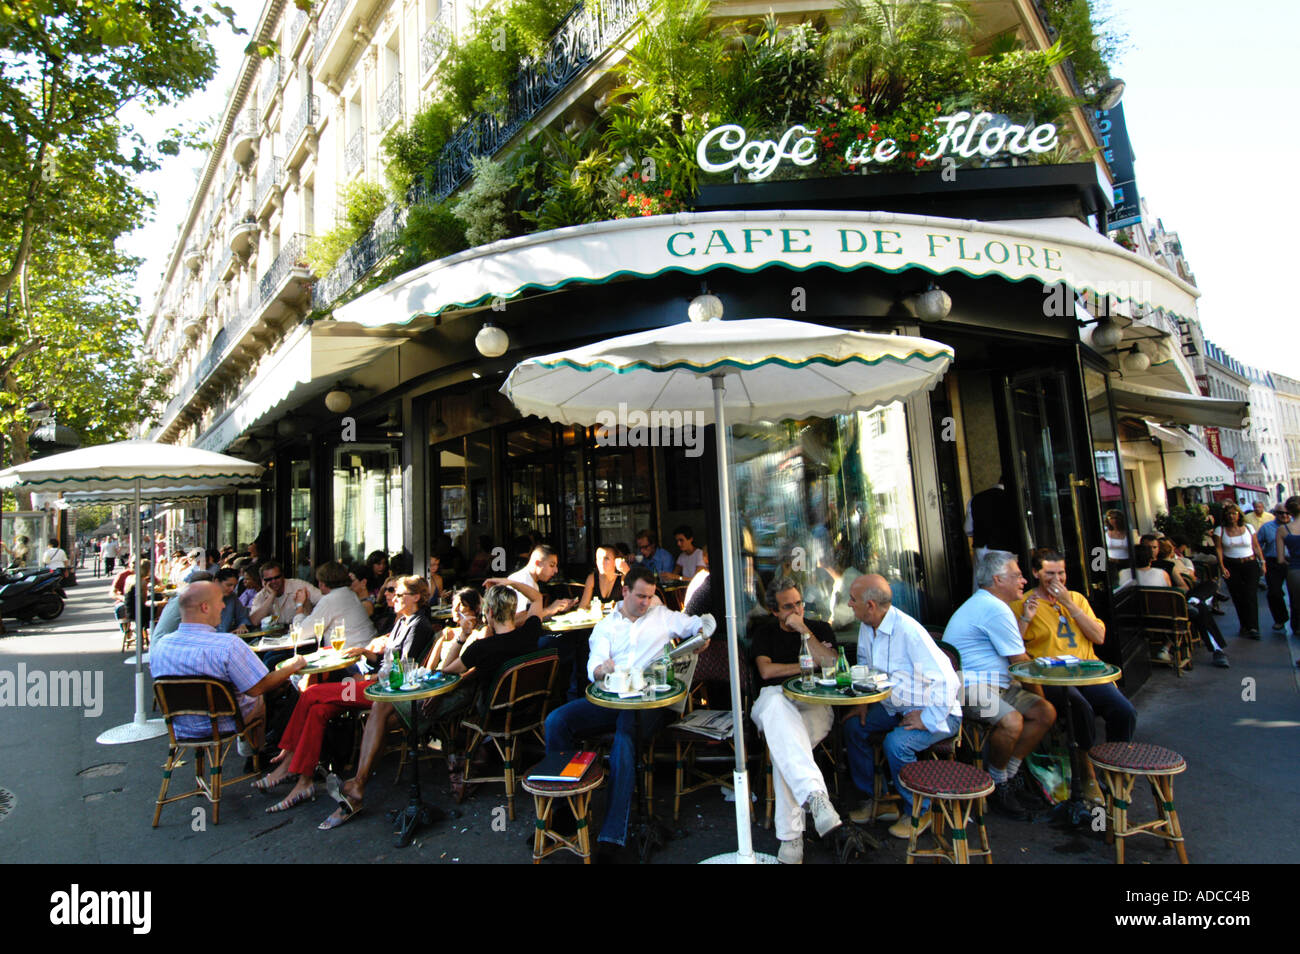 Cafe de Flore in Saint Germain des Pres Paris France Stock Photo